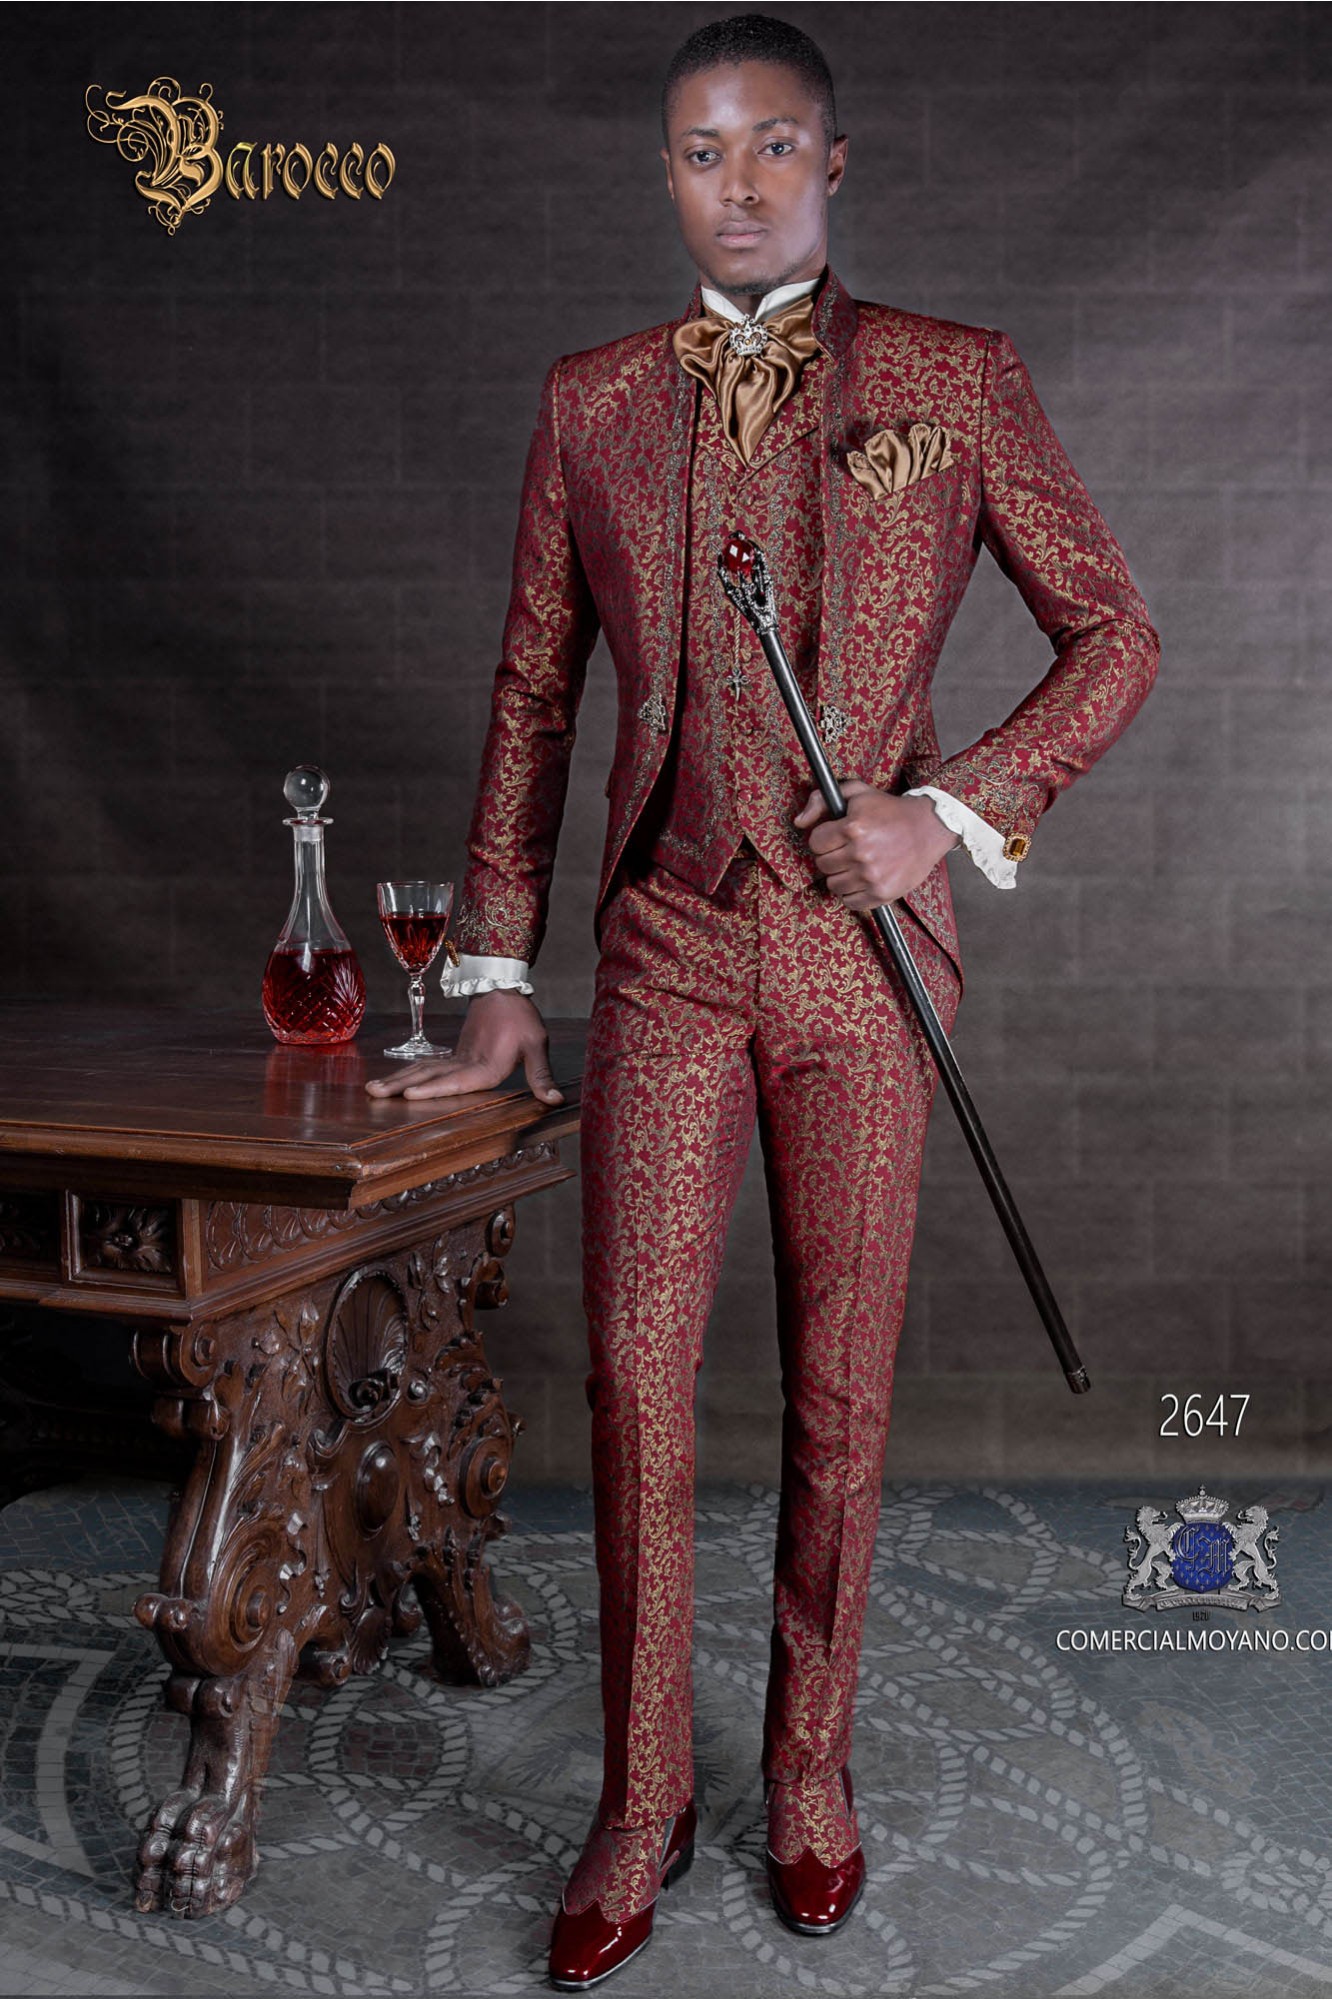 Traje de novio barroco, levita de época cuello mao en tejido jacquard rojo y dorado con bordados plateados modelo: 2647 Mario Moyano colección Barroco